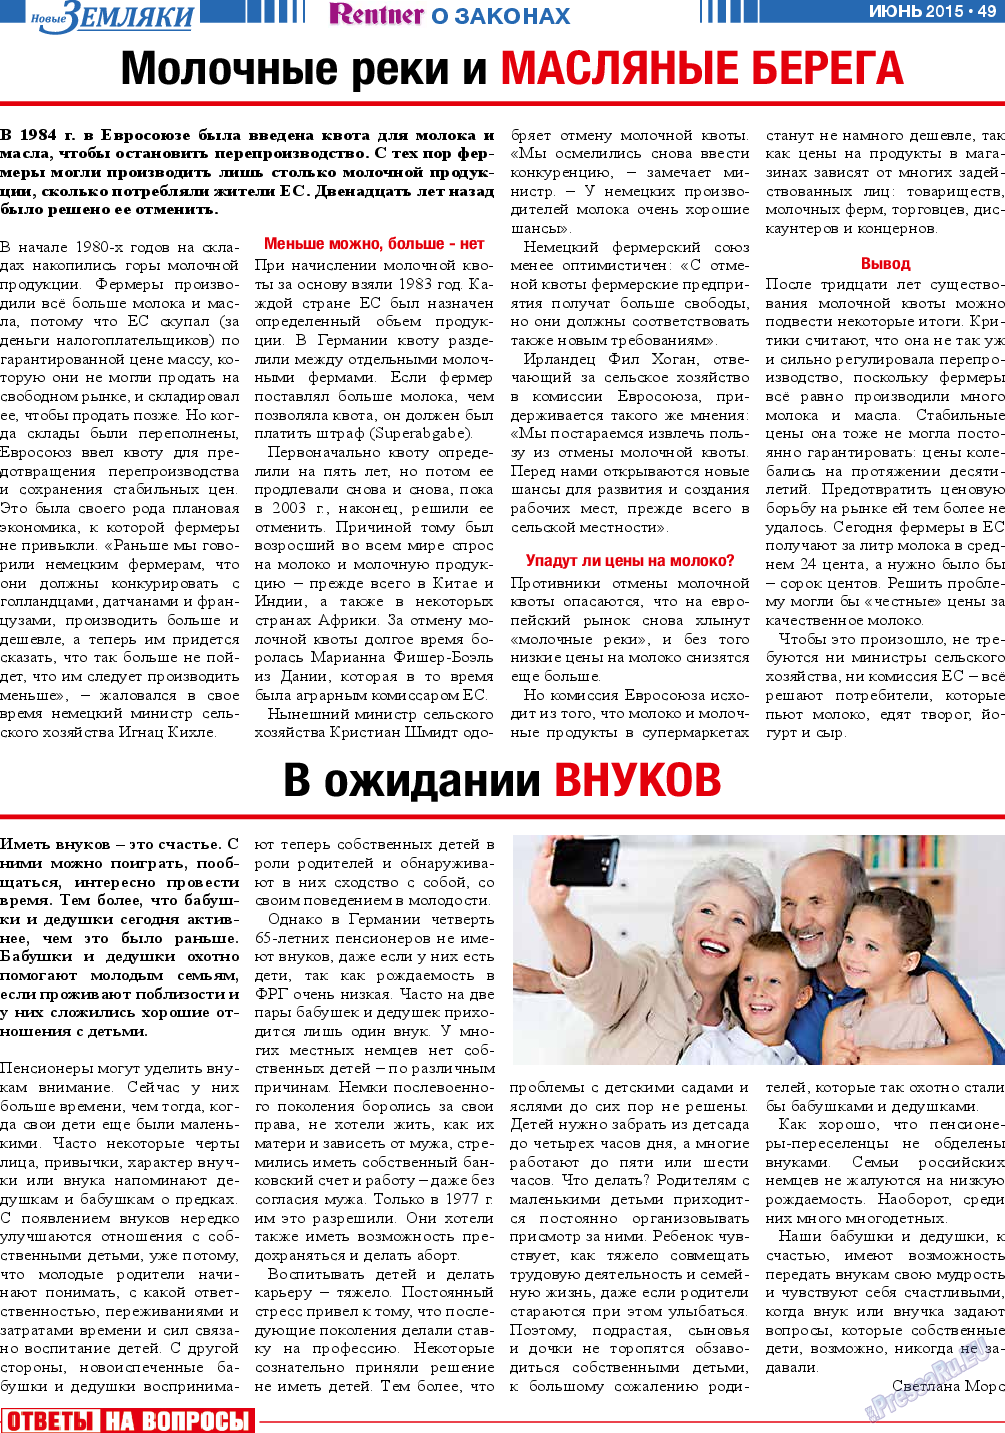 Новые Земляки, газета. 2015 №6 стр.49